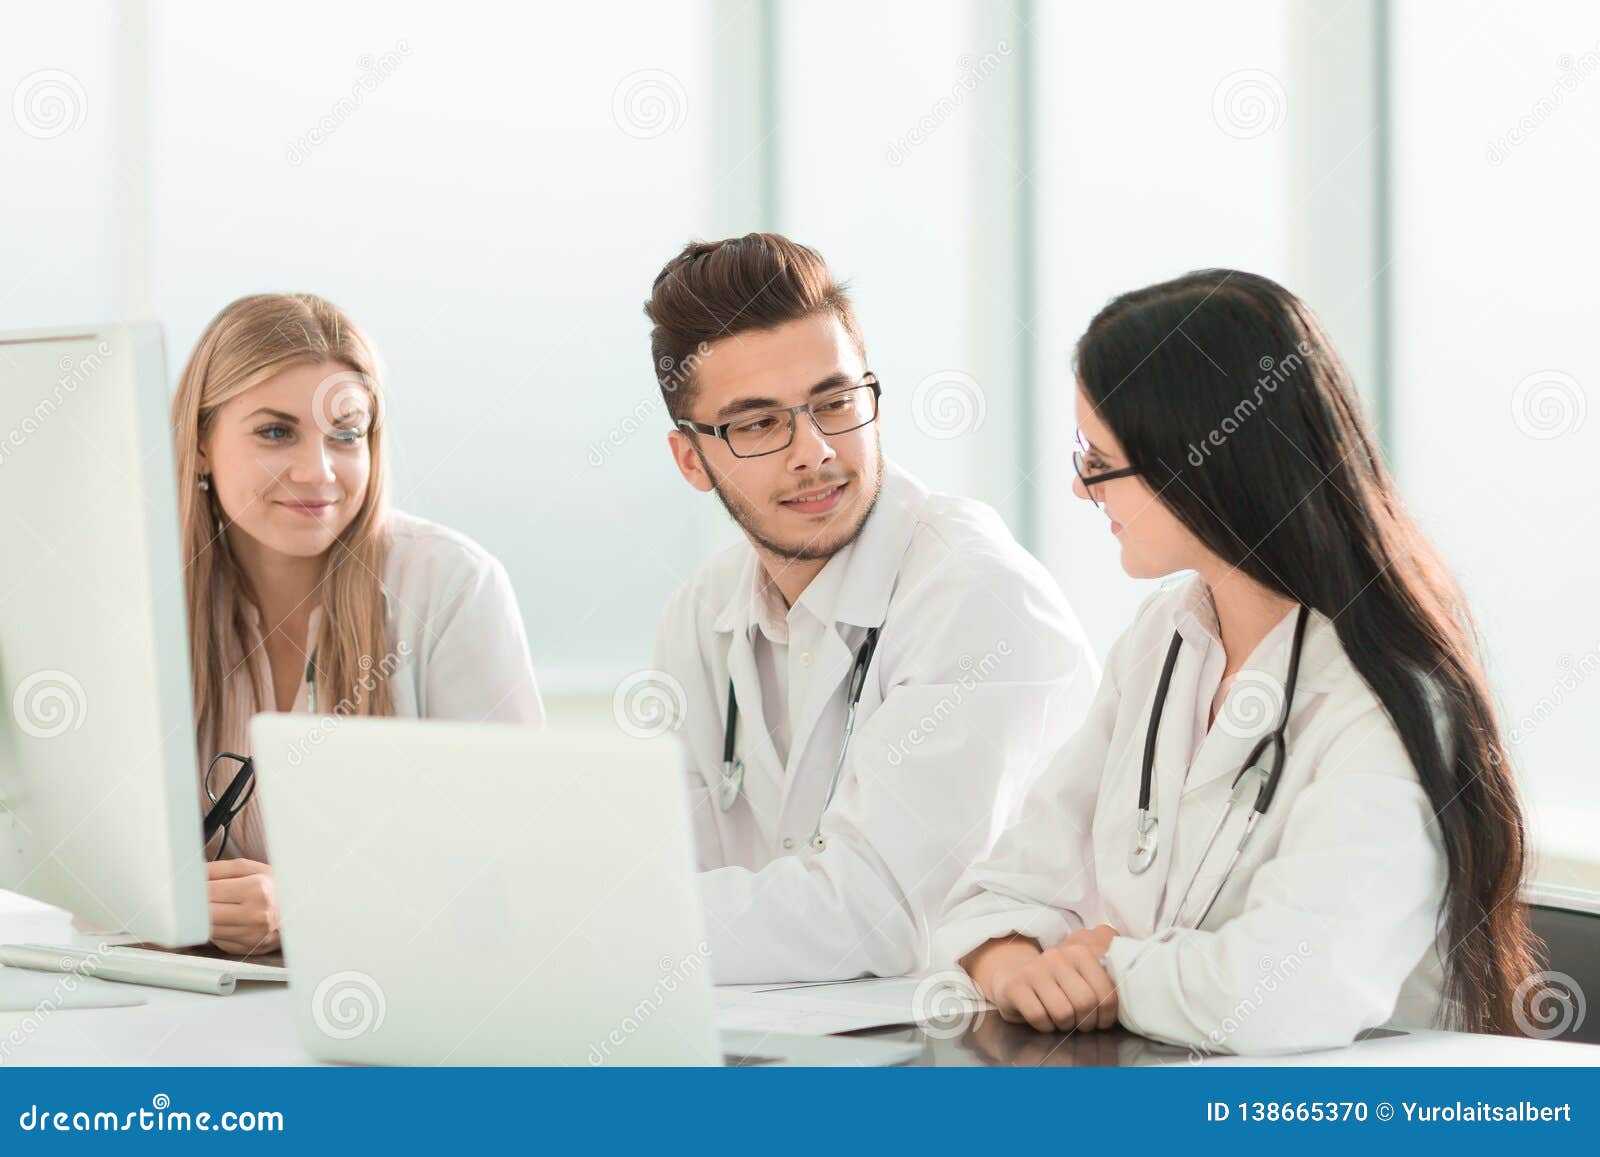 medical experts online